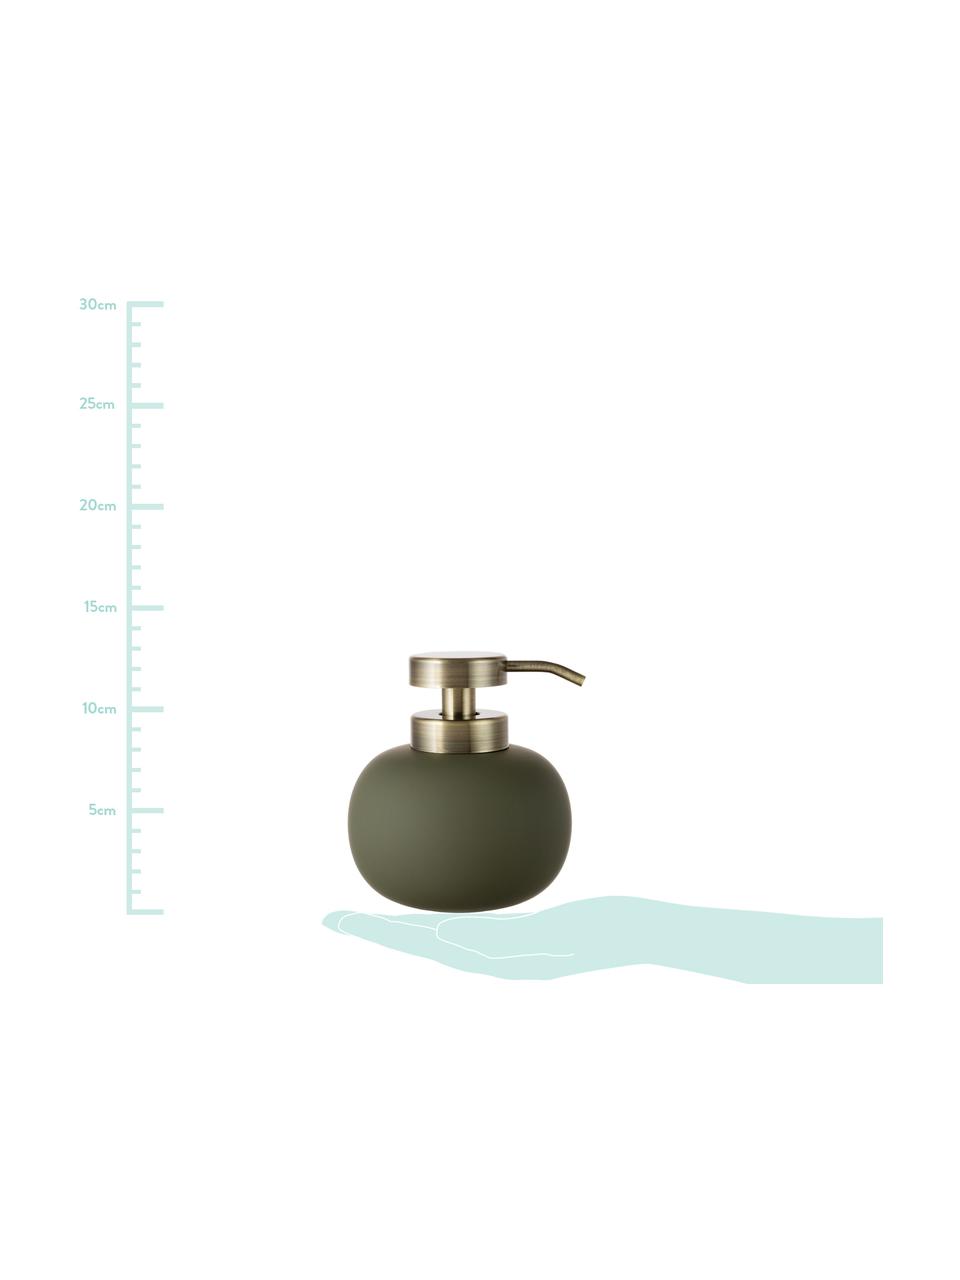 Dosificador de jabón Lotus, Recipiente: cerámica, Dosificador: metal, Verde oliva, latón, Ø 11 x Al 13 cm